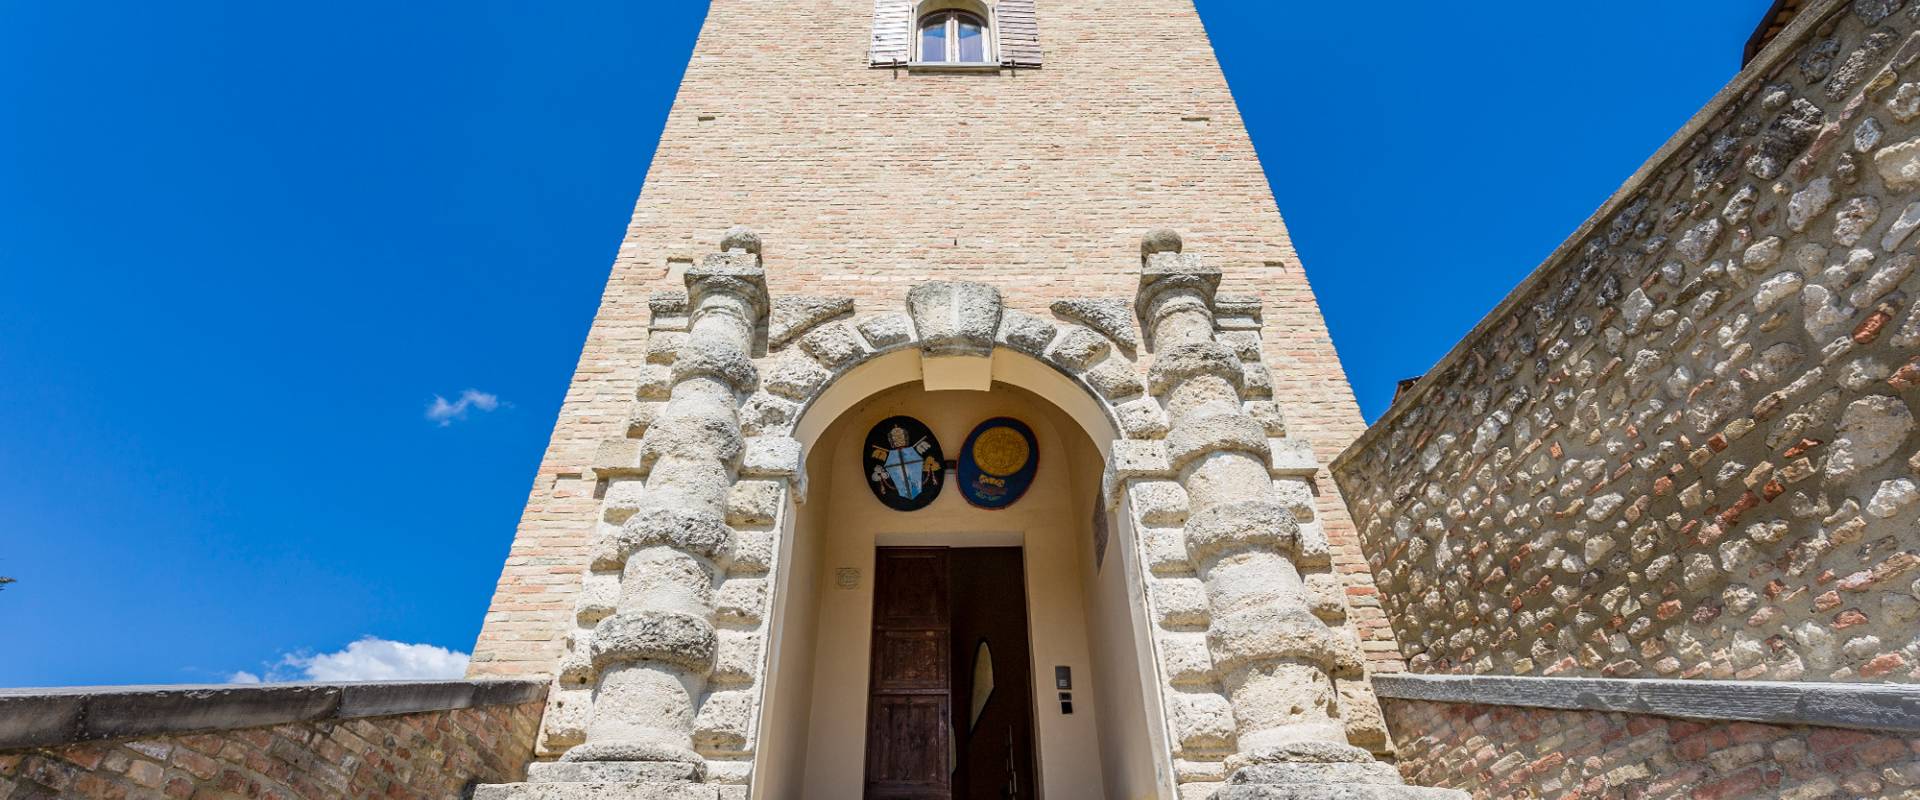 Rocca Vescovile di Bertinoro, portale d'ingresso, 1583 foto di Marco Anconelli